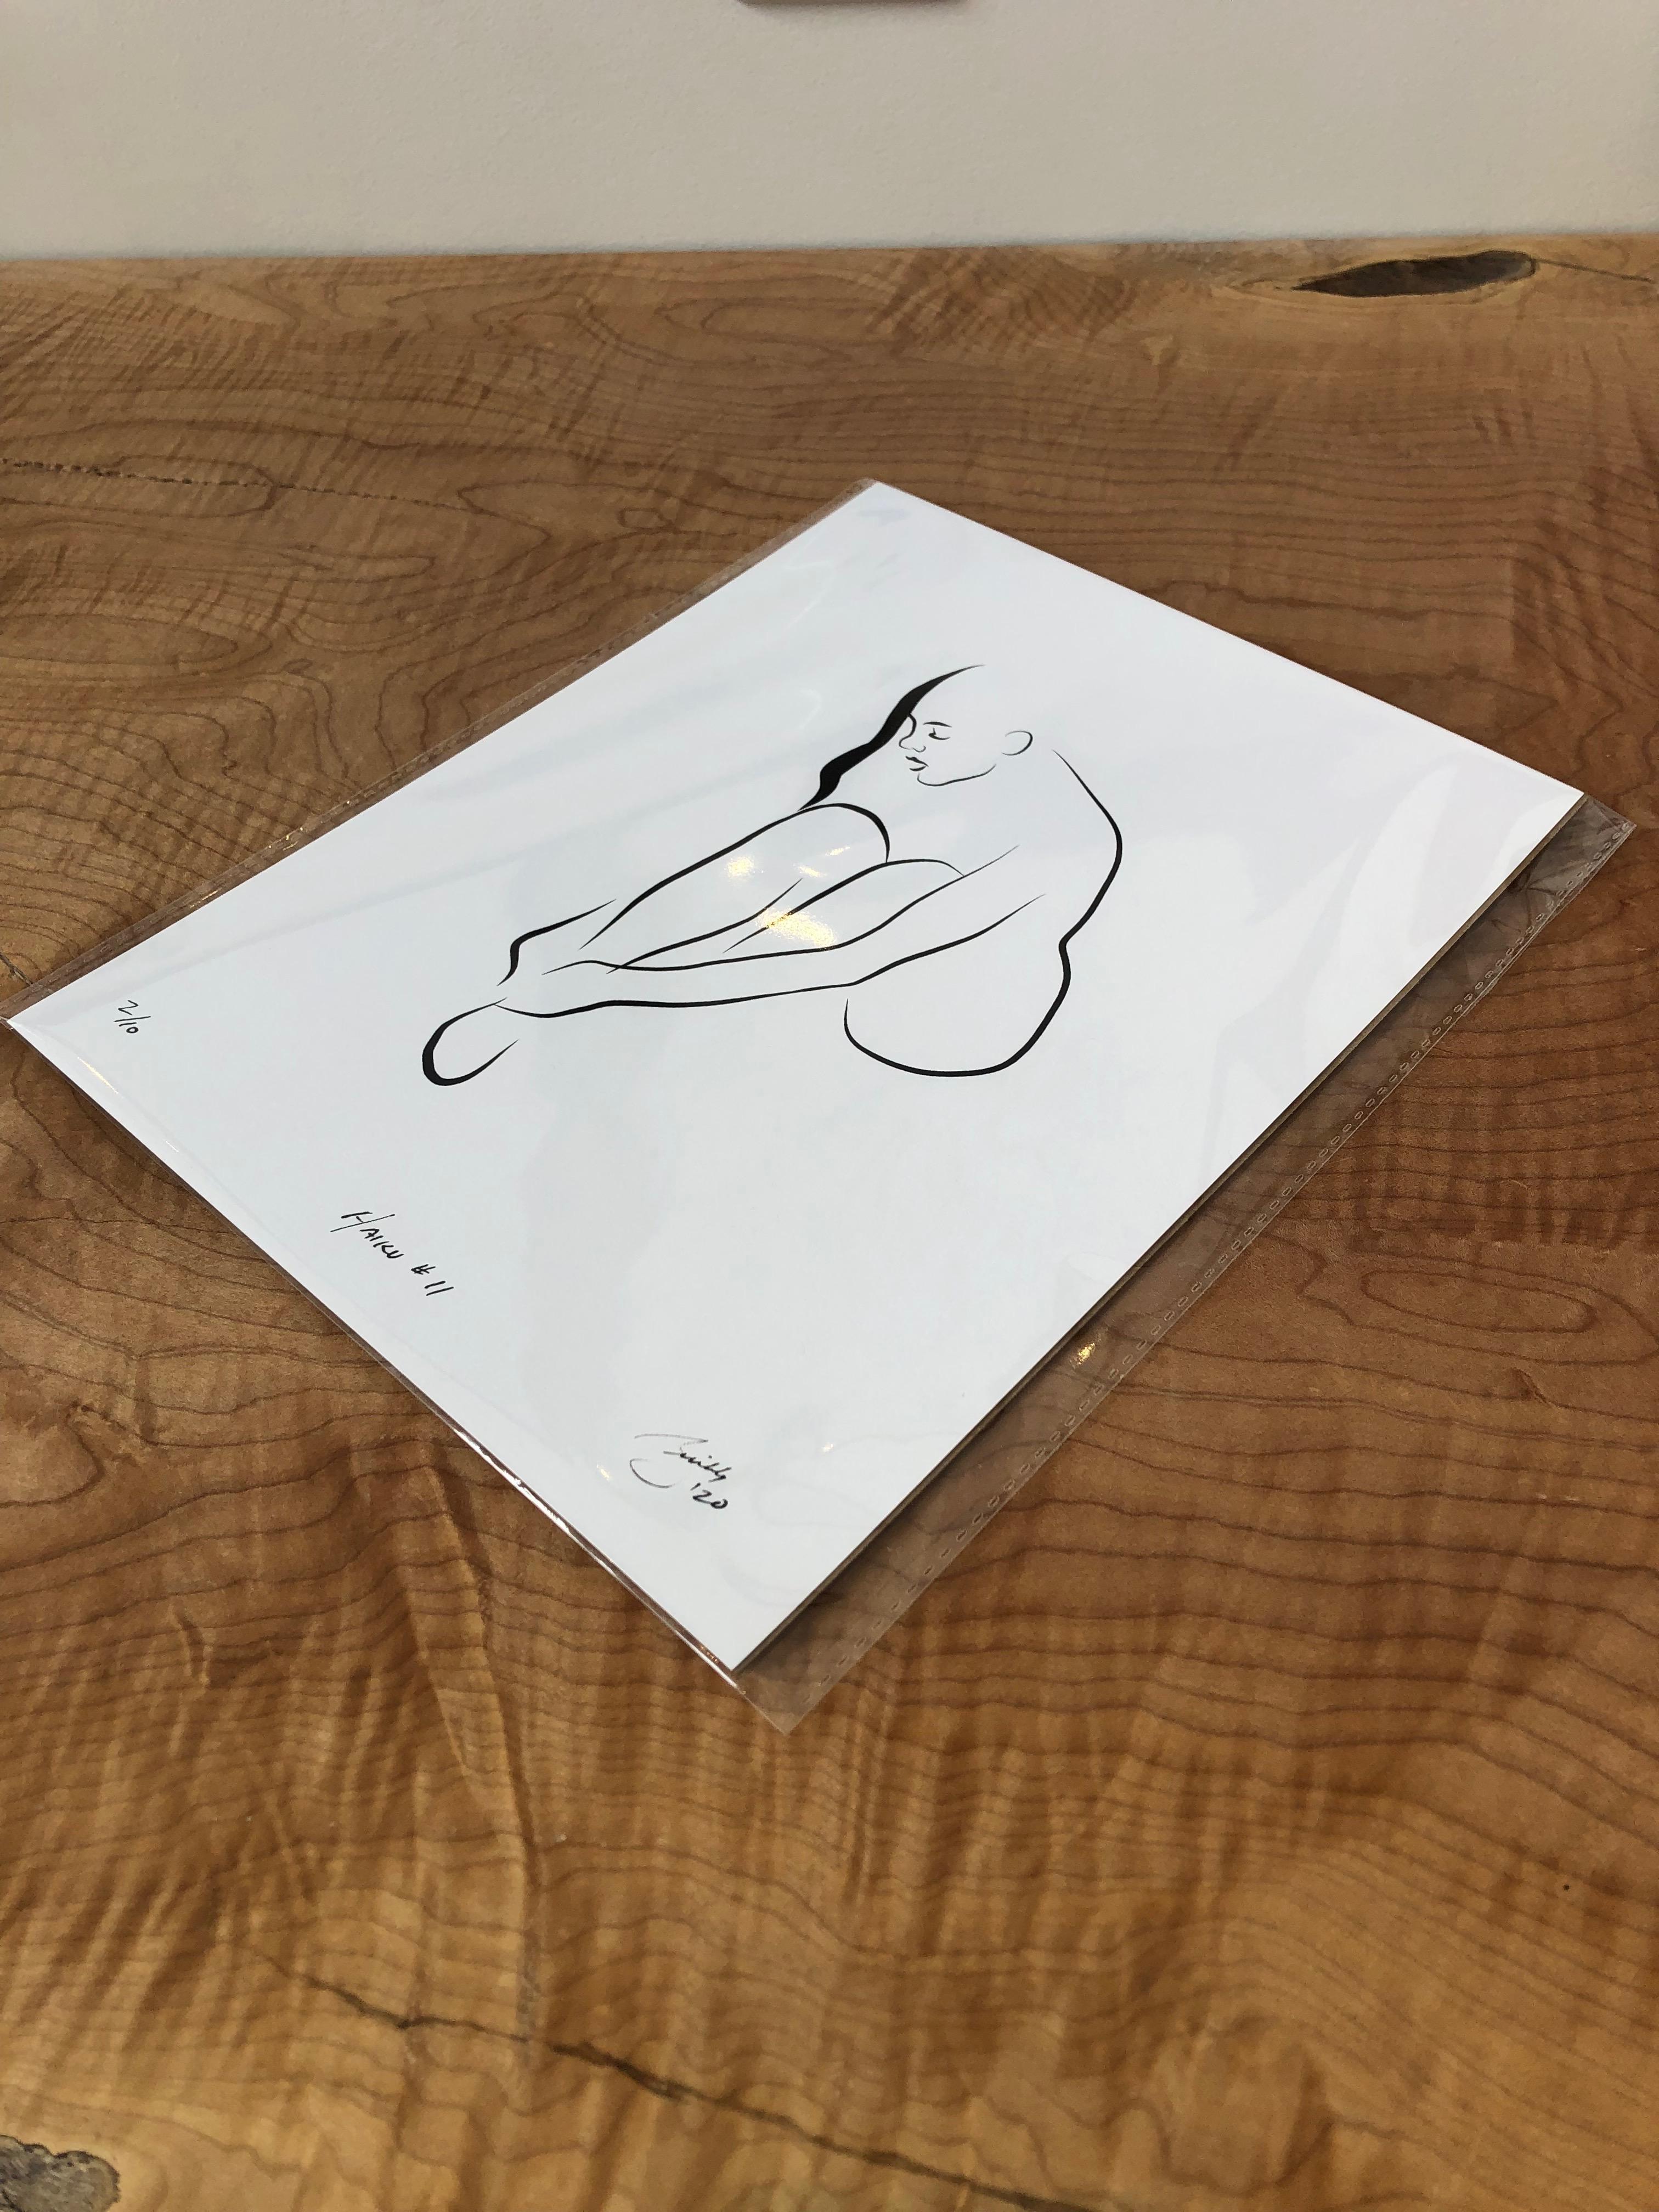 Haiku #11, 1/50 - Digital Vector Drawing Female Nude Woman Figure Buckling Shoe - Print by Michael Binkley